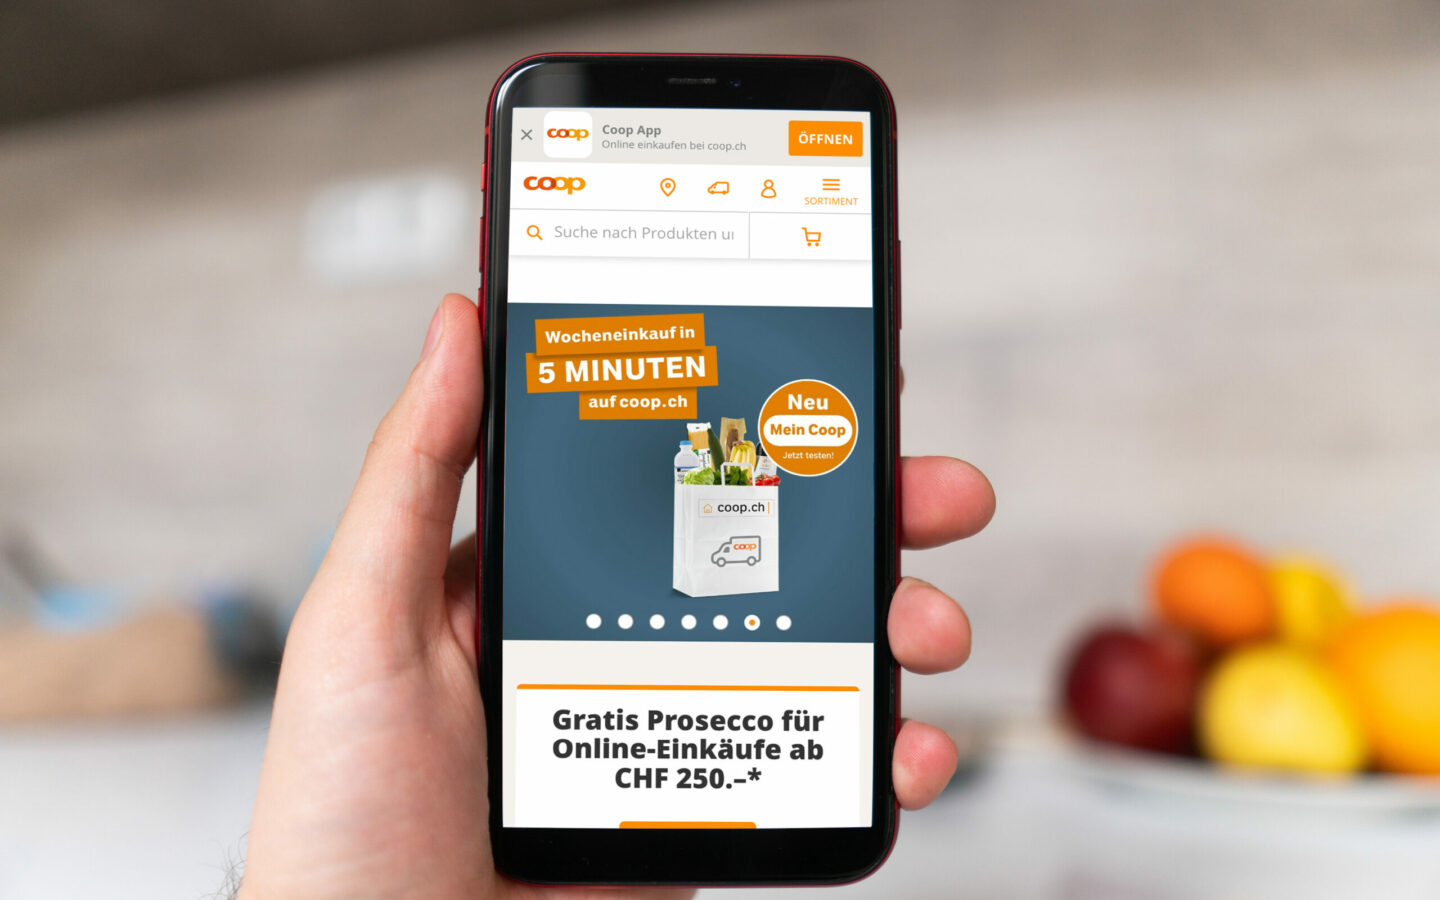 Bild von einem Smartphone im Vordergrund mit geöffneter coop.ch Startseite, SAP Commerce